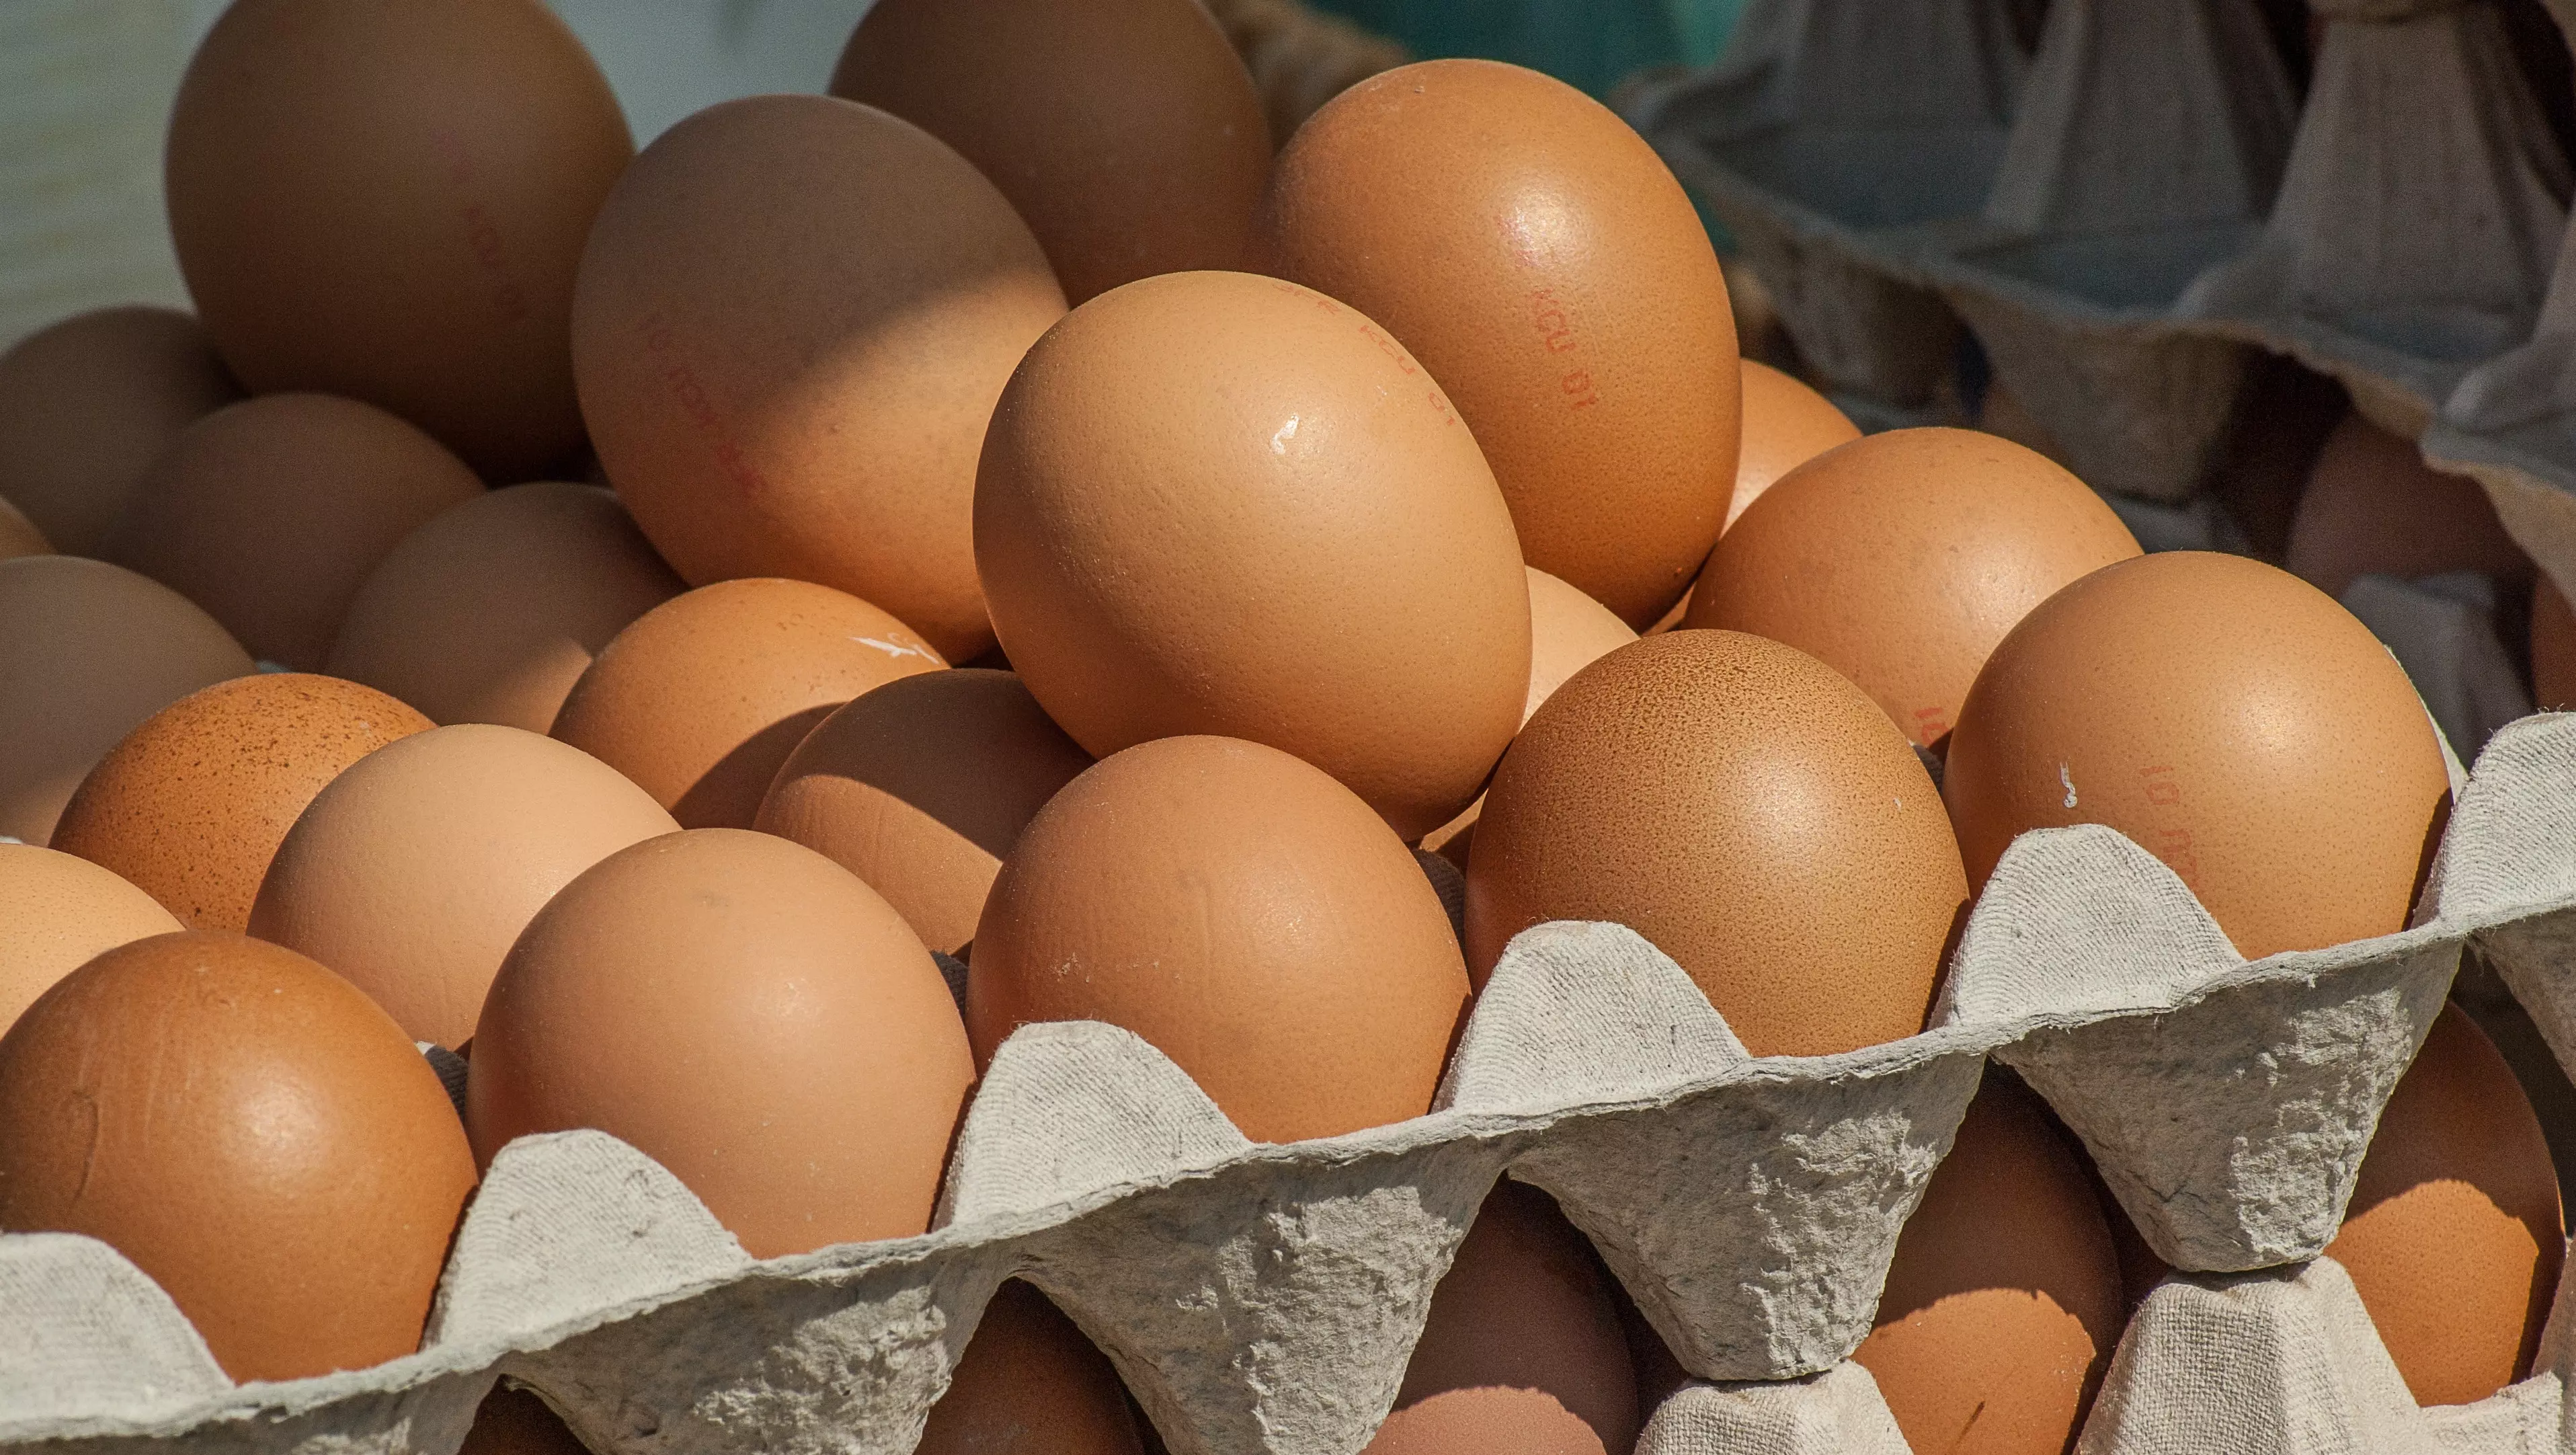 Главу Кисловодска обвинили в замалчивании проблем с яйцами